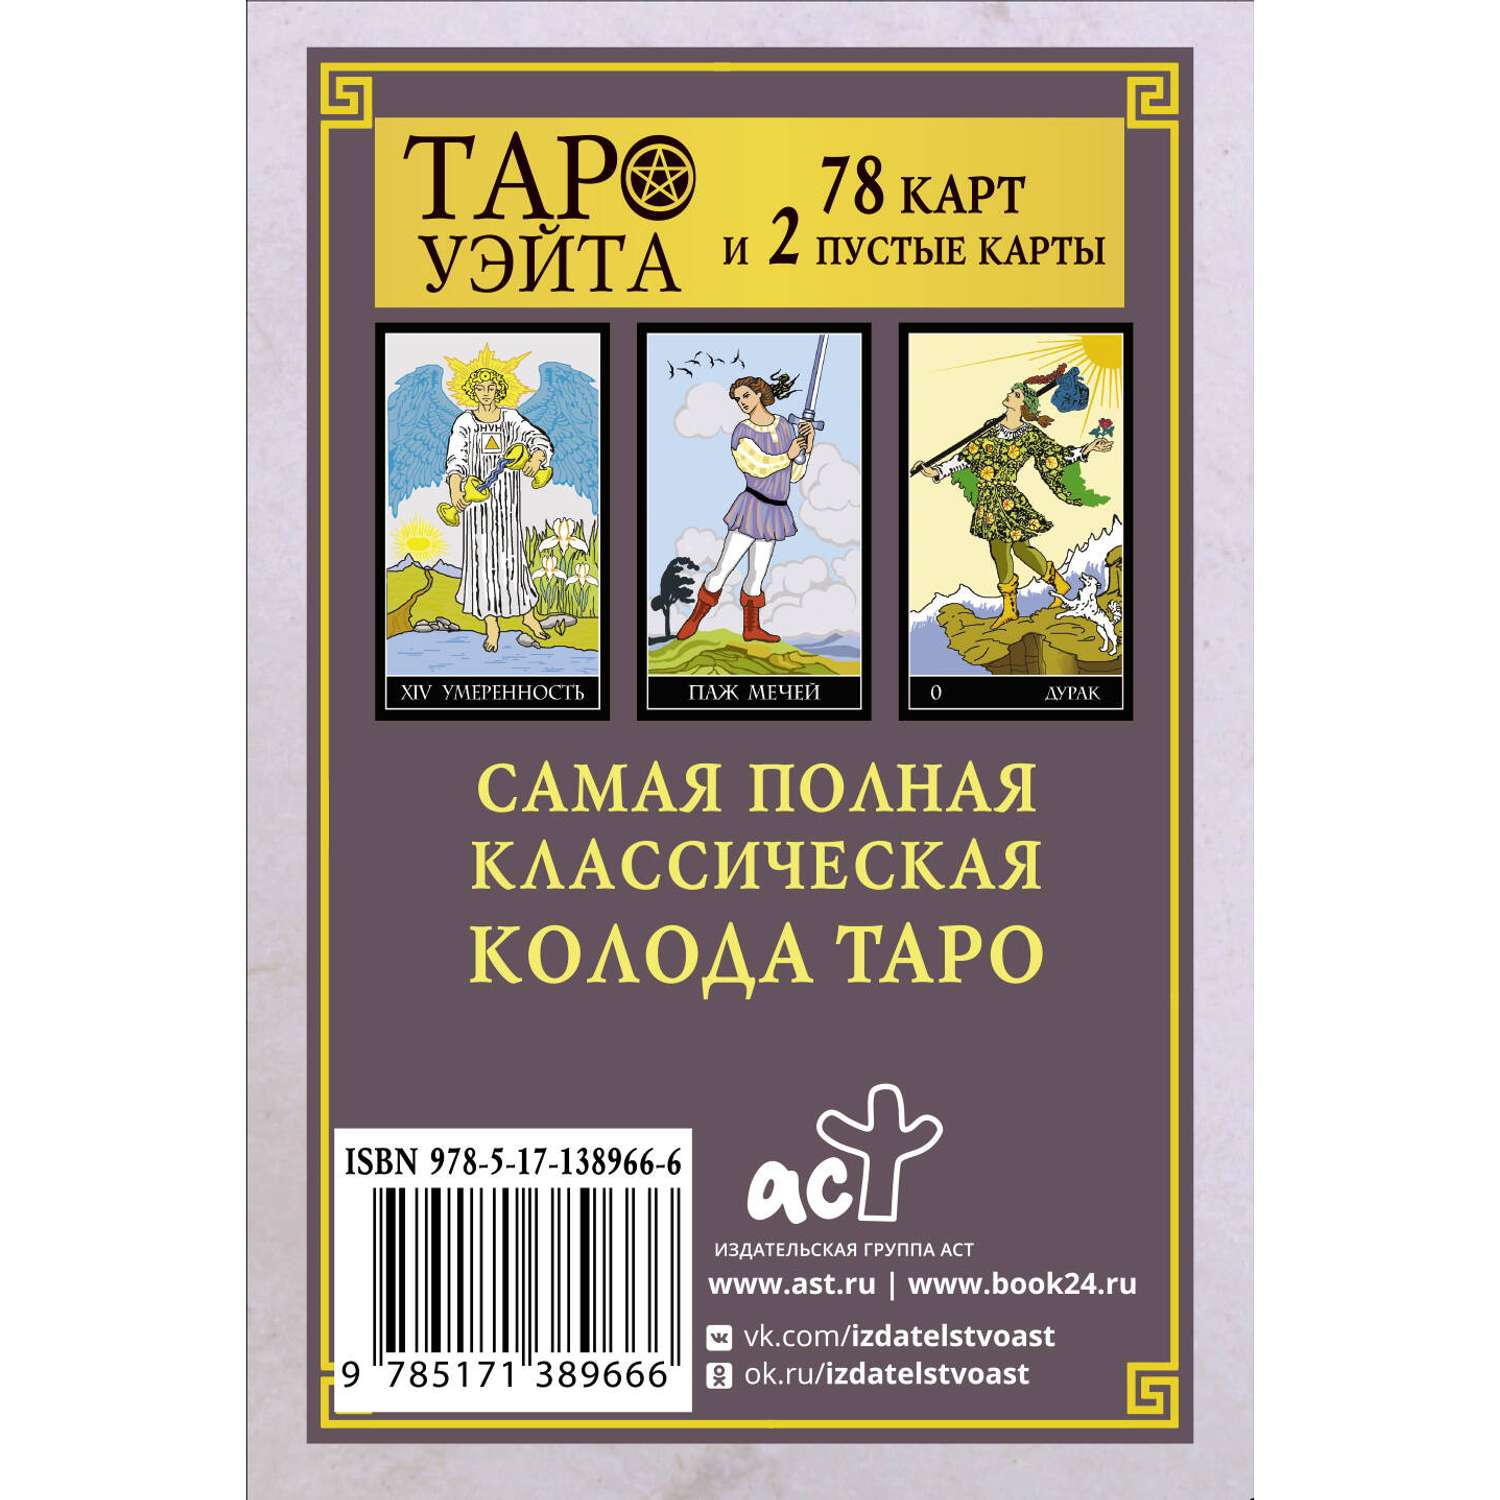 Книга АСТ Классическая колода Таро Уэйта. Полная версия. 78 карт и 2 пустые карты - фото 2